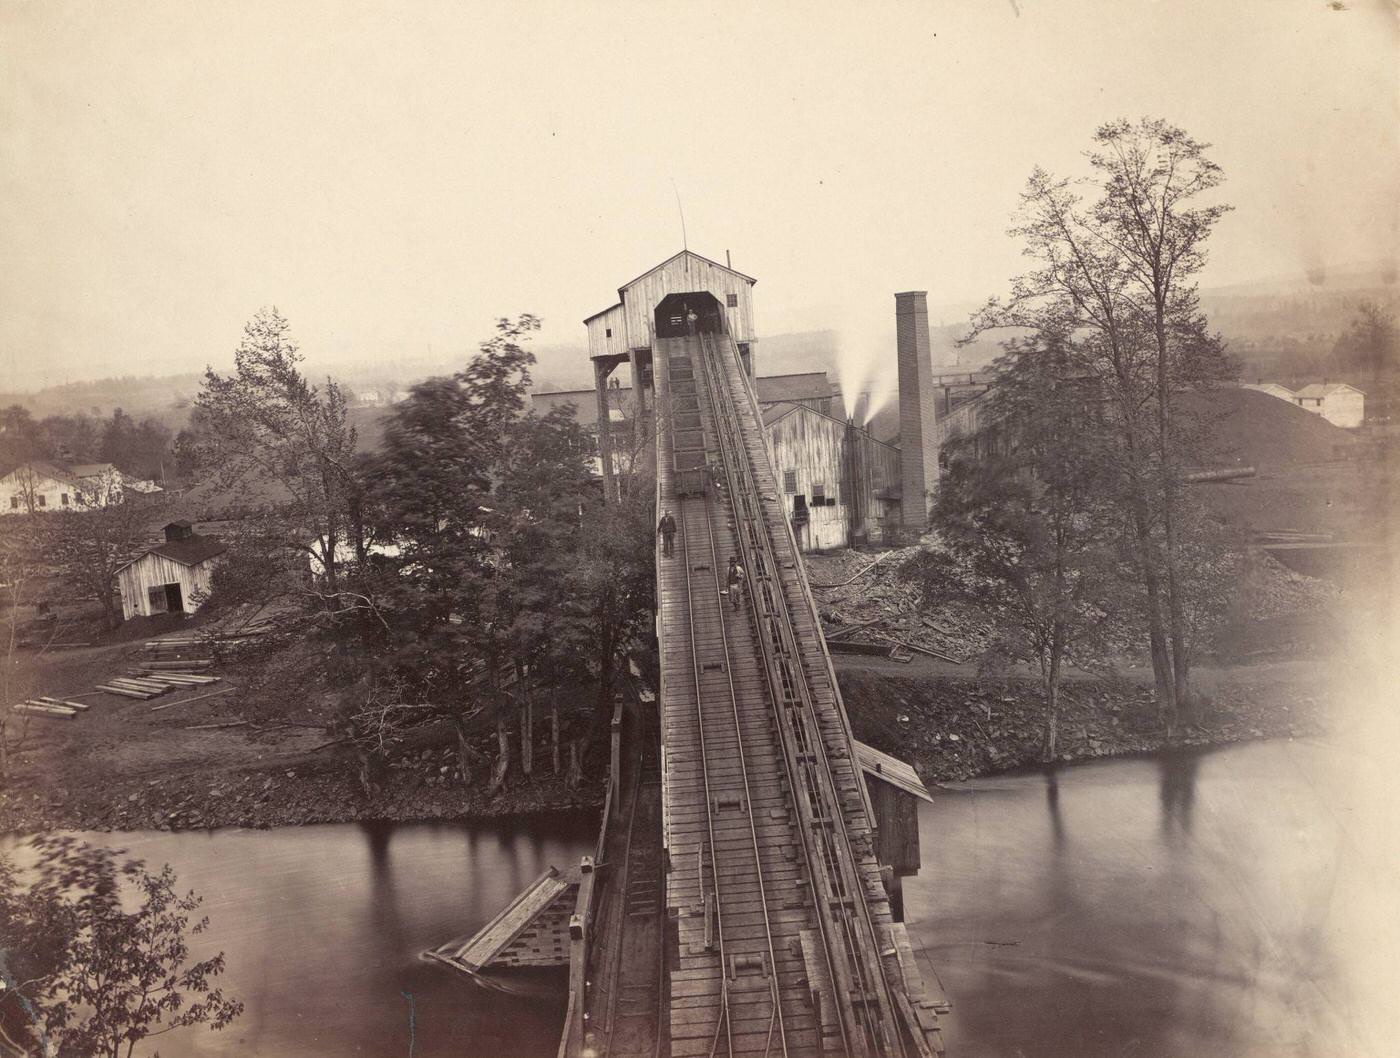 Von Storch Breaker, Washington, D.C., 1863